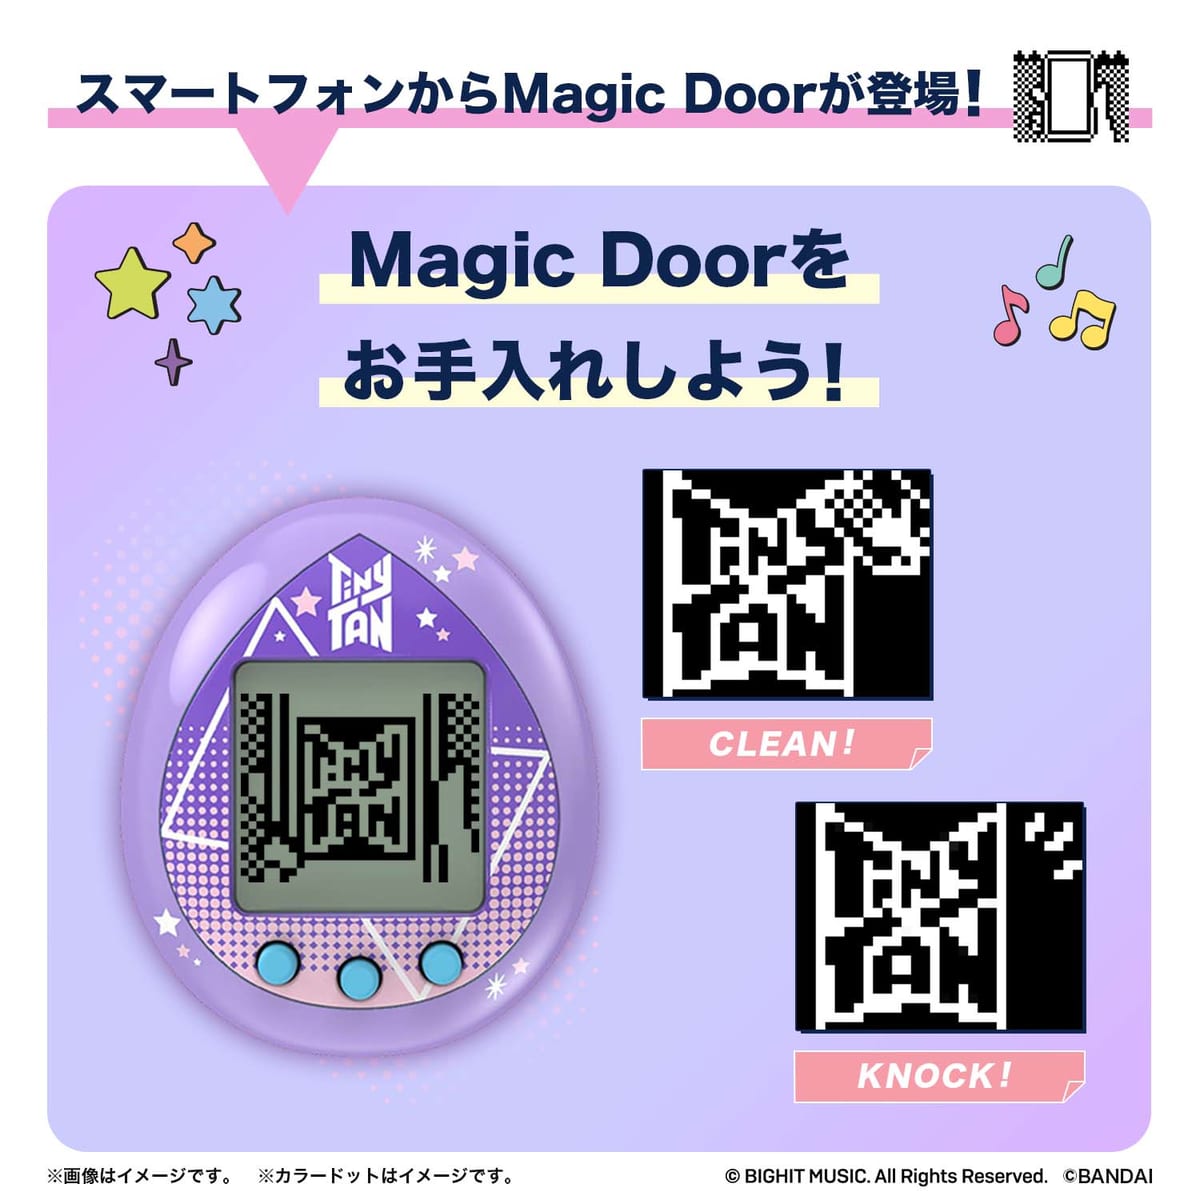 バンダイ「TinyTAN Tamagotchi」「Magic Door」のお手入れ